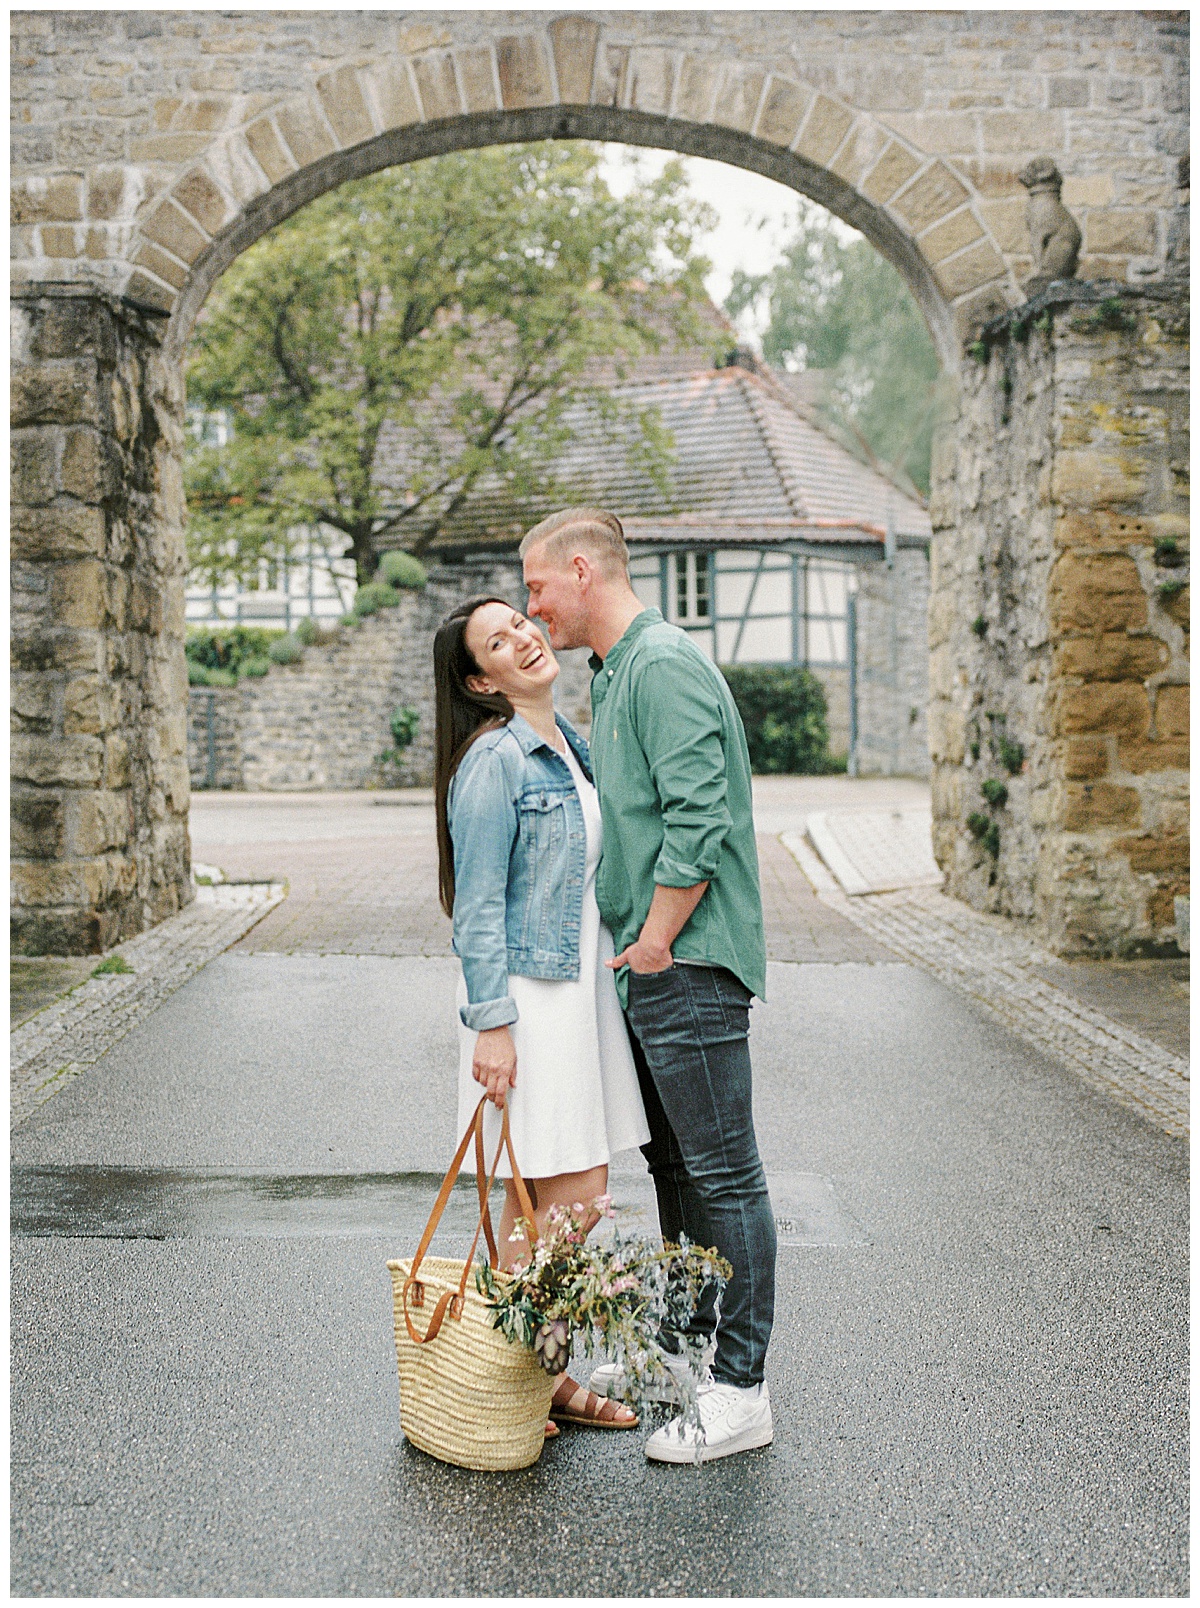 Paarfotoshooting in der Altstadt von Bretten - Die Hochzeitsfotografen